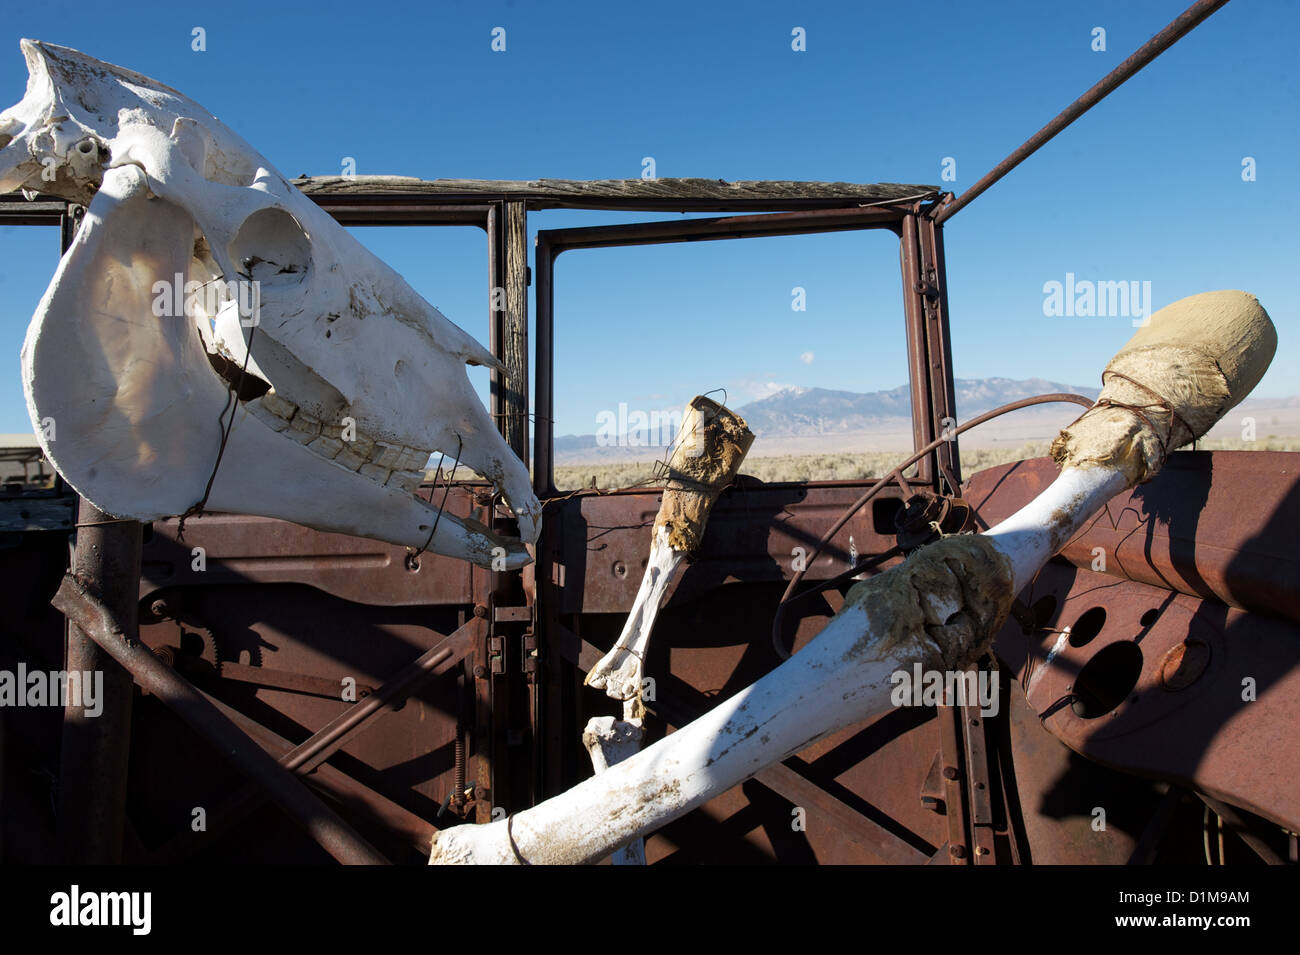 Pferd-Schädel und Skelett rostige Auto, veranschaulicht das Konzept des Todes am Rad, gefährliches fahren oder Verkehrstoten Stockfoto